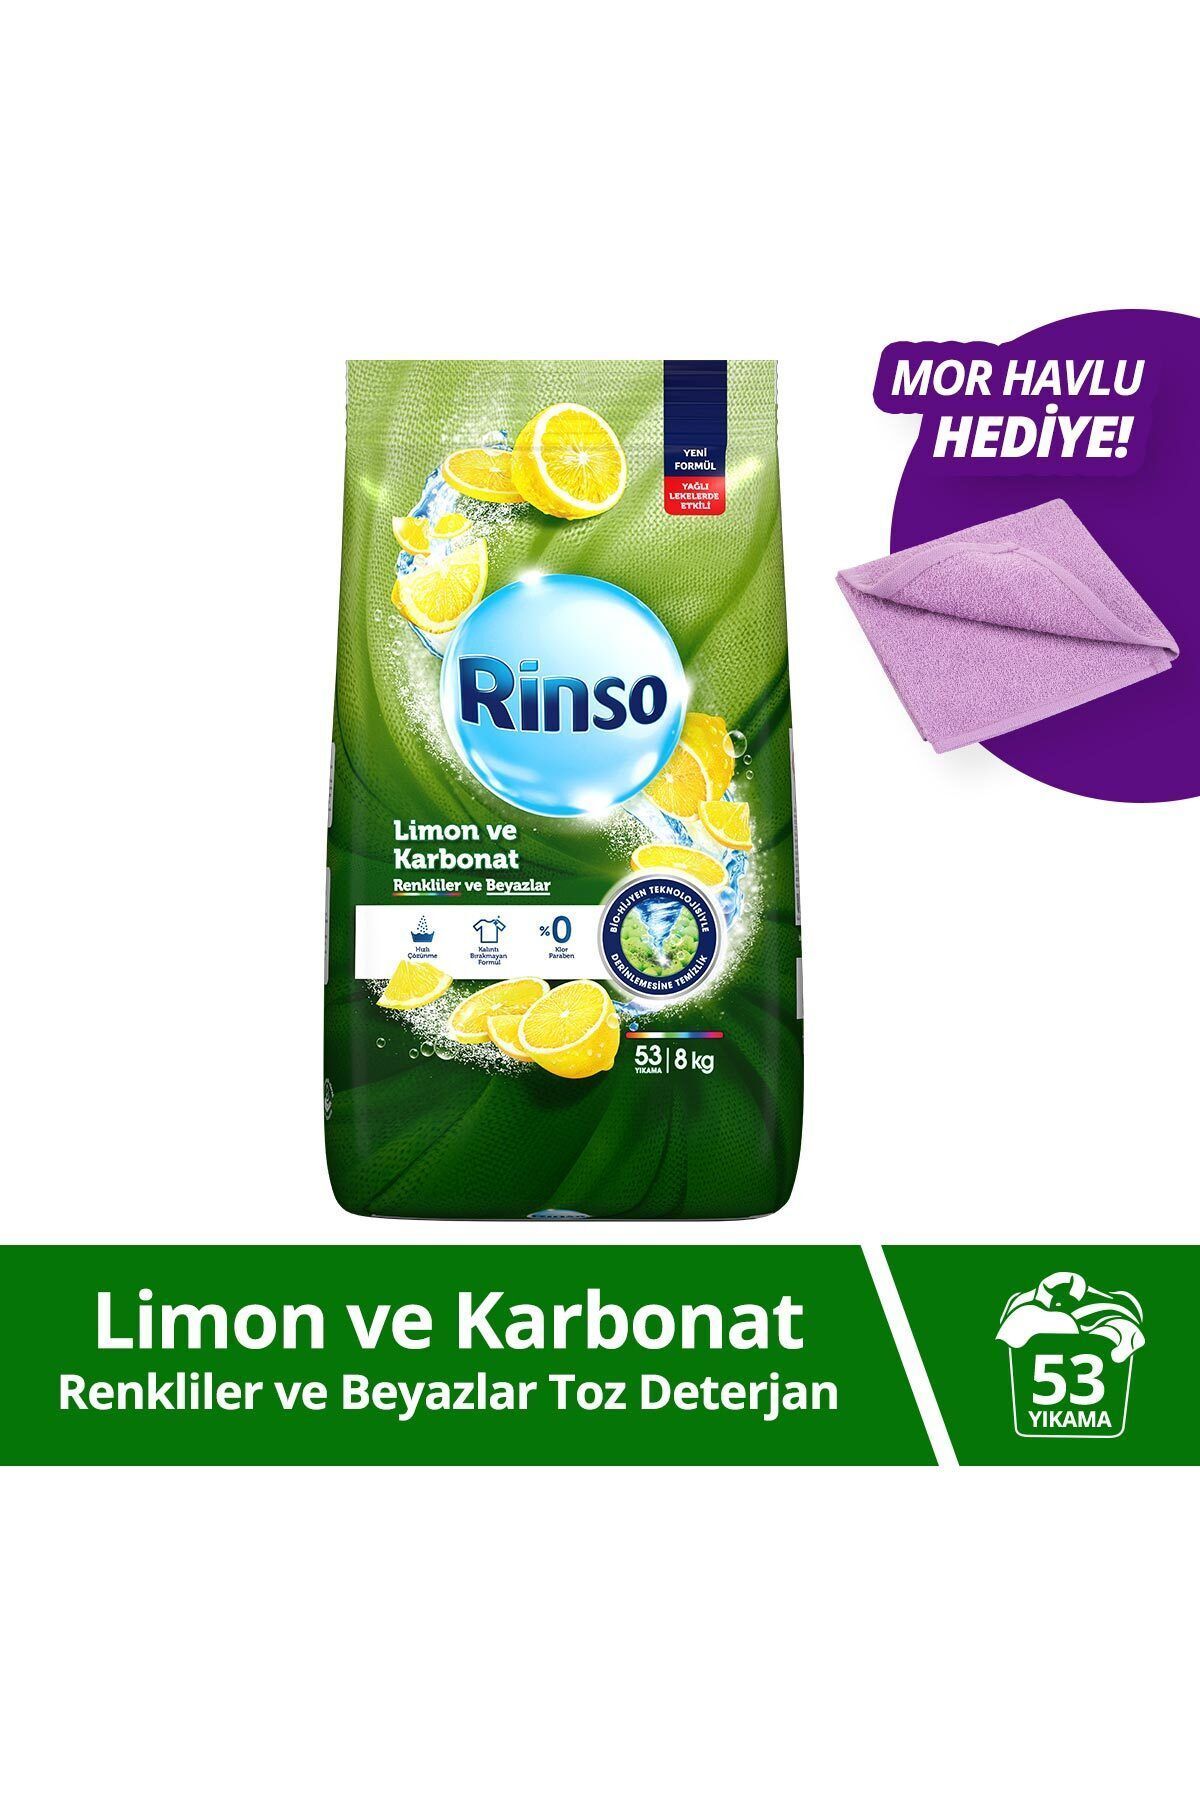 Rinso Toz Çamaşır Deterjanı Limon Ve Karbonat Renkliler Ve Beyazlar 8 Kg X1 1 Adet Havlu Hediye